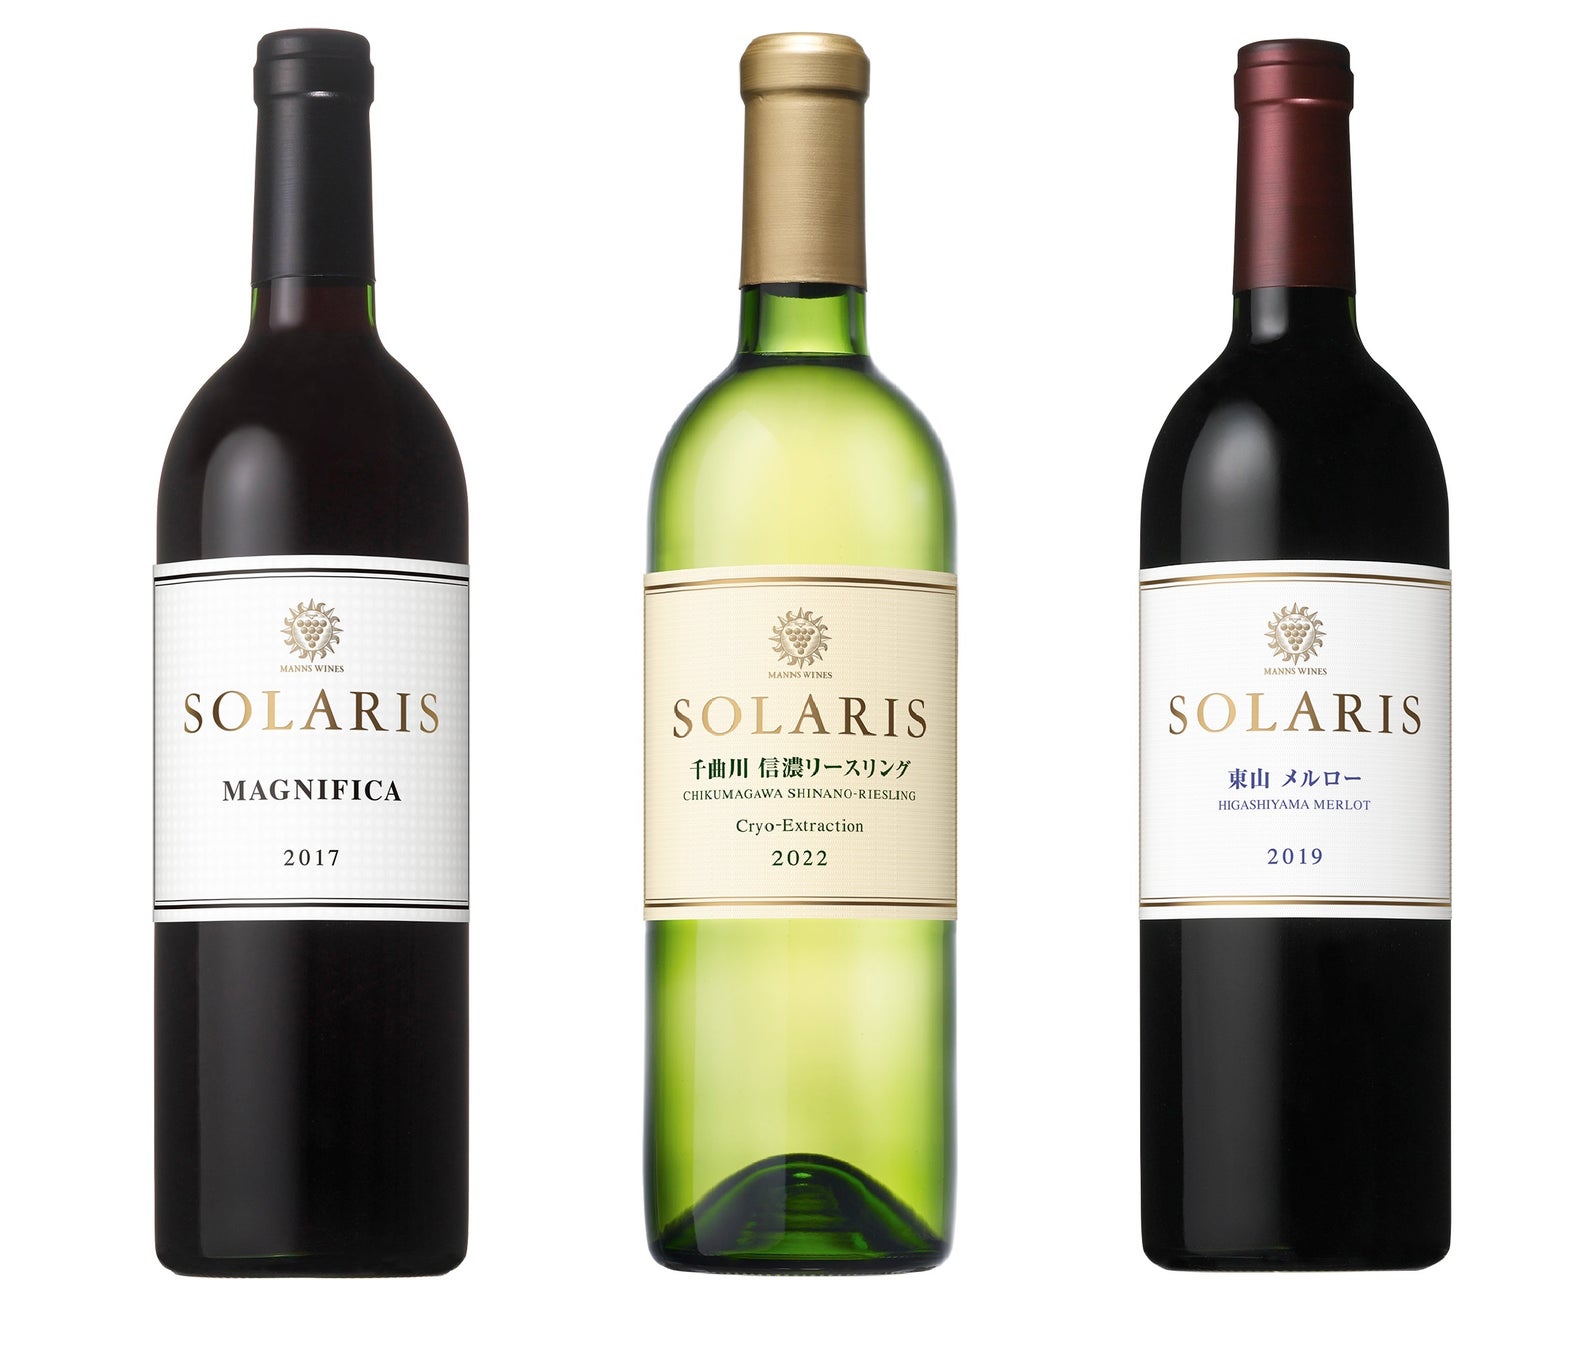 「ヴィナリ国際ワインコンクール2024」で、マンズワインの「ソラリス マニフィカ 2017」が 、日本の赤ワインで初のグランド・ゴールドを受賞